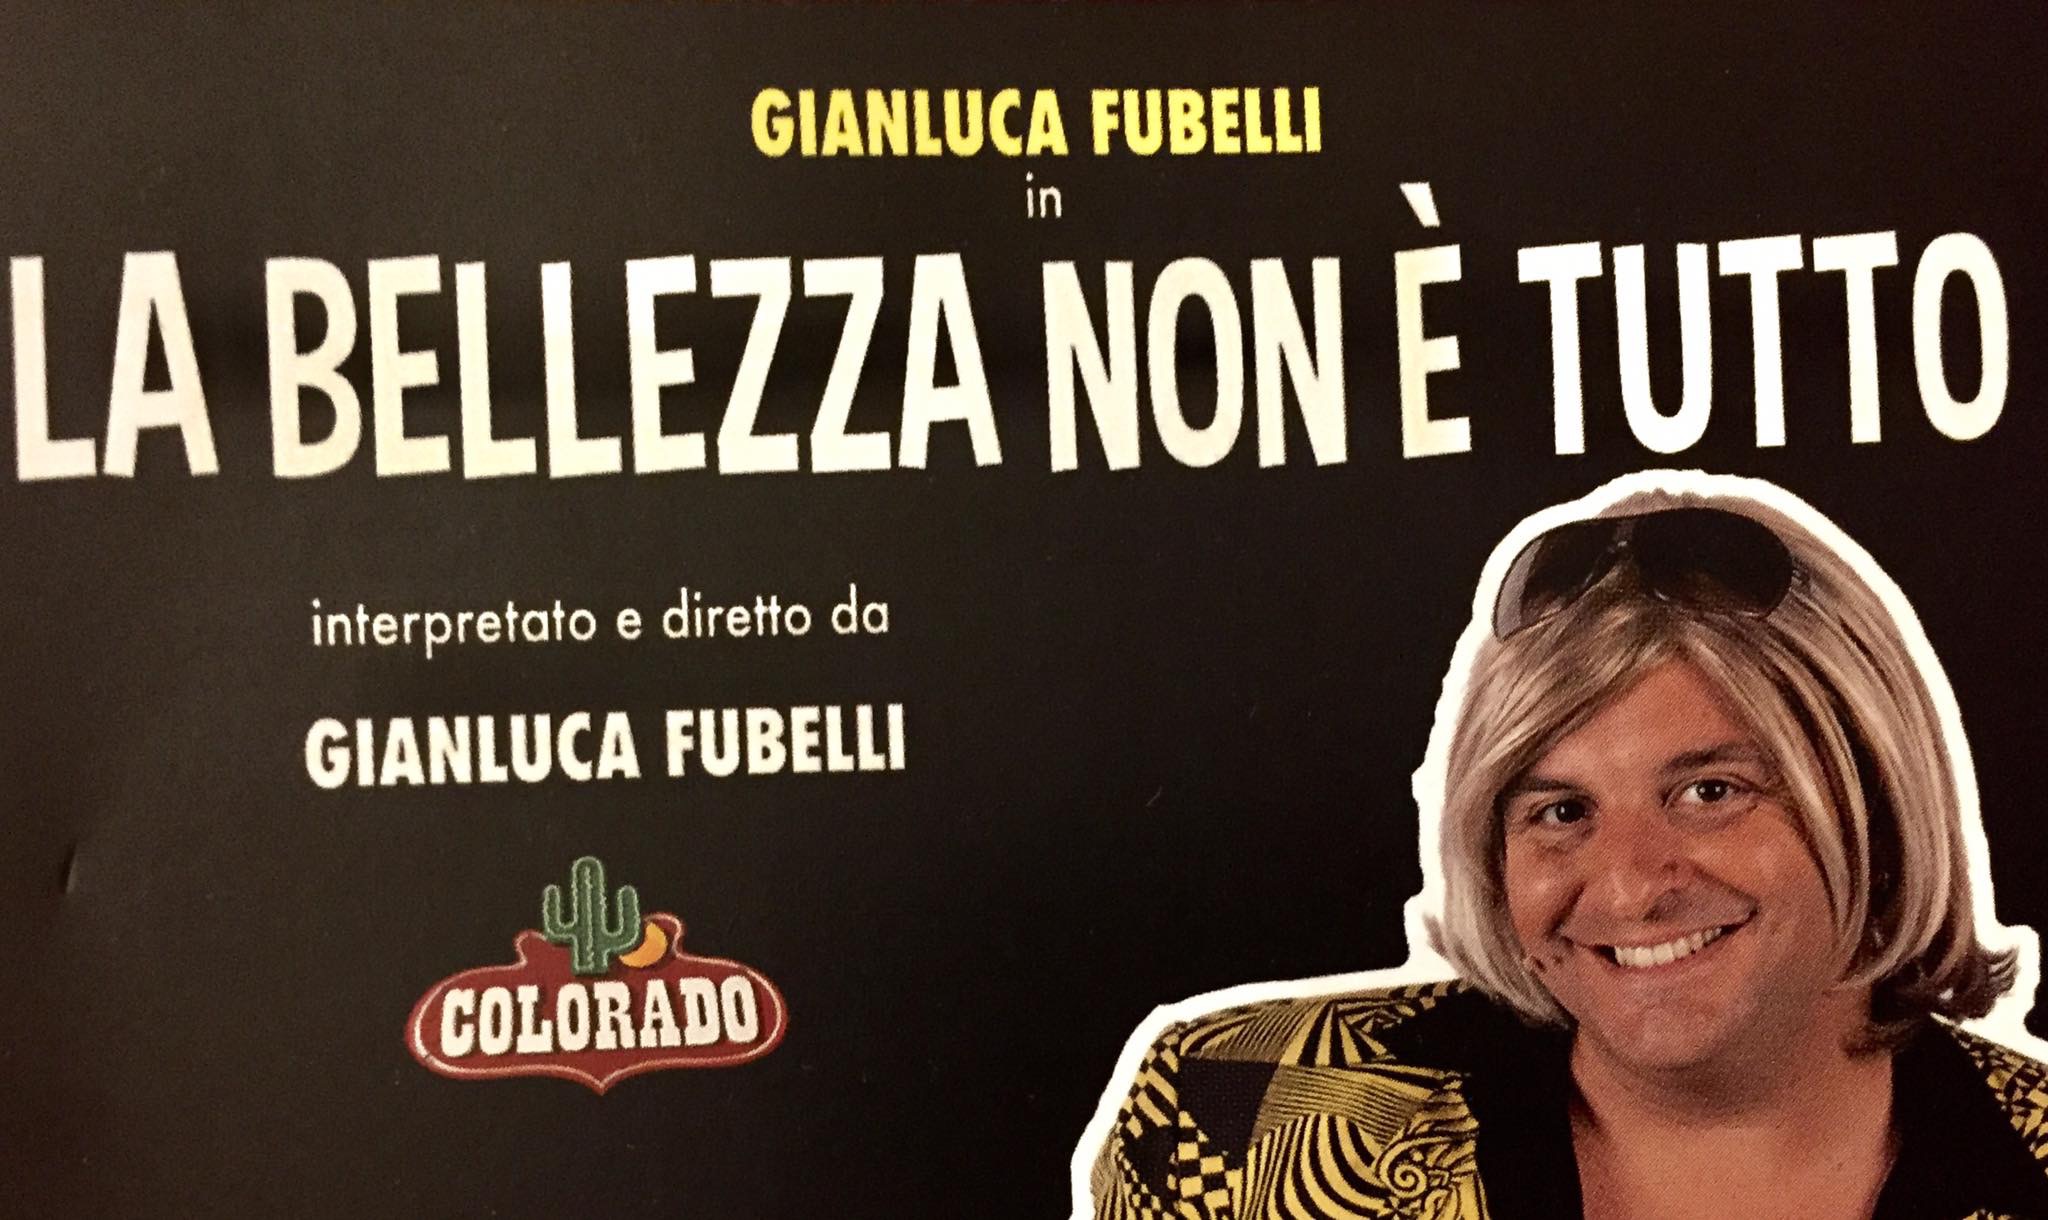 Gianluca Fubelli in La bellezza non è tutto nella sala Massimo Troisi